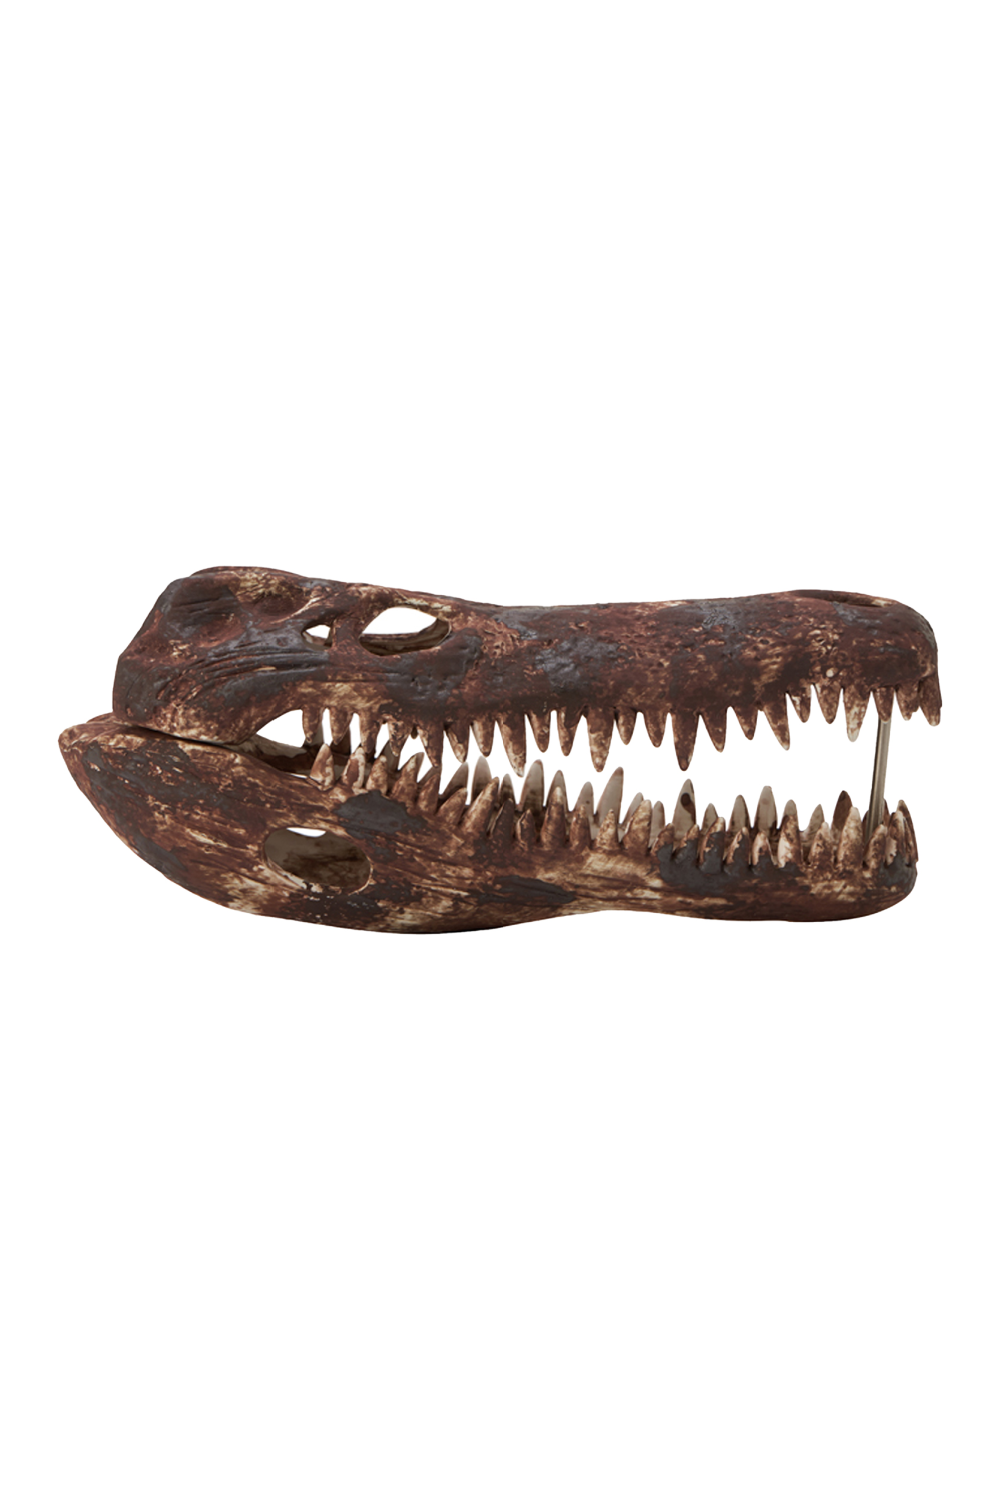 Brown Crocodile Skull Sculpture | Liang & Eimil Croco | Oroa.com